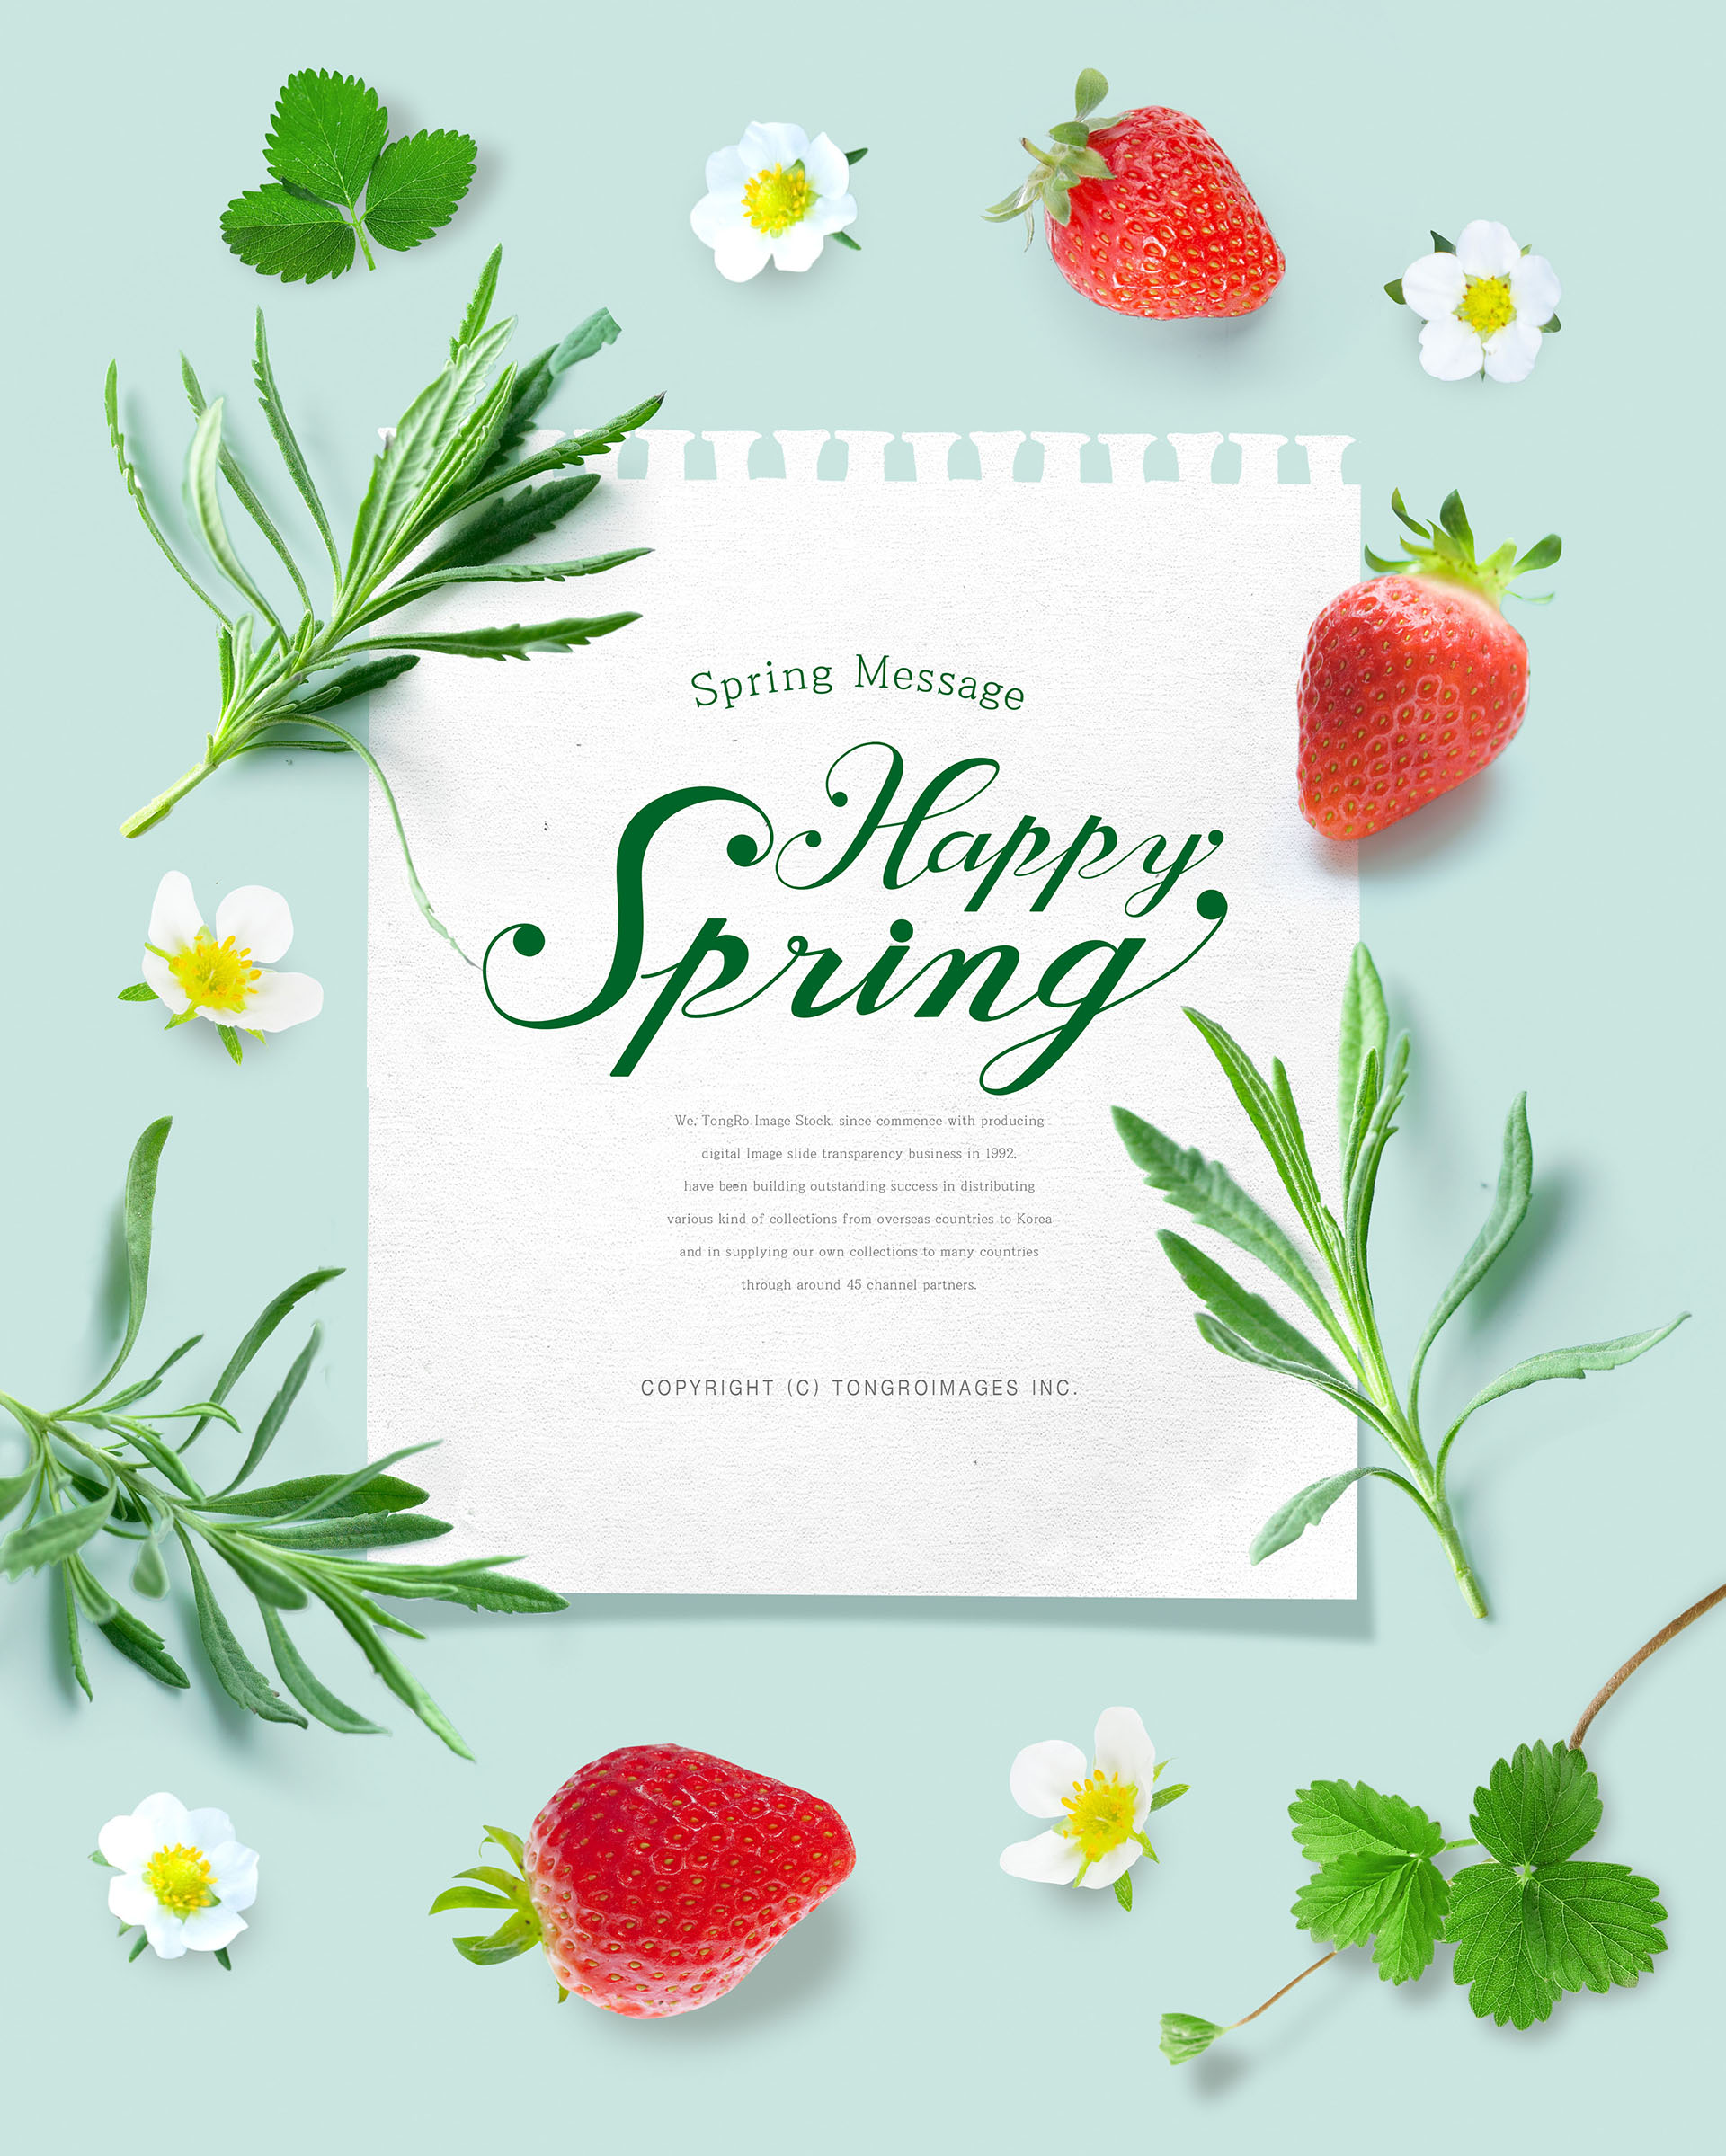 清新的春天氛围创意海报模板PSD插图(11)